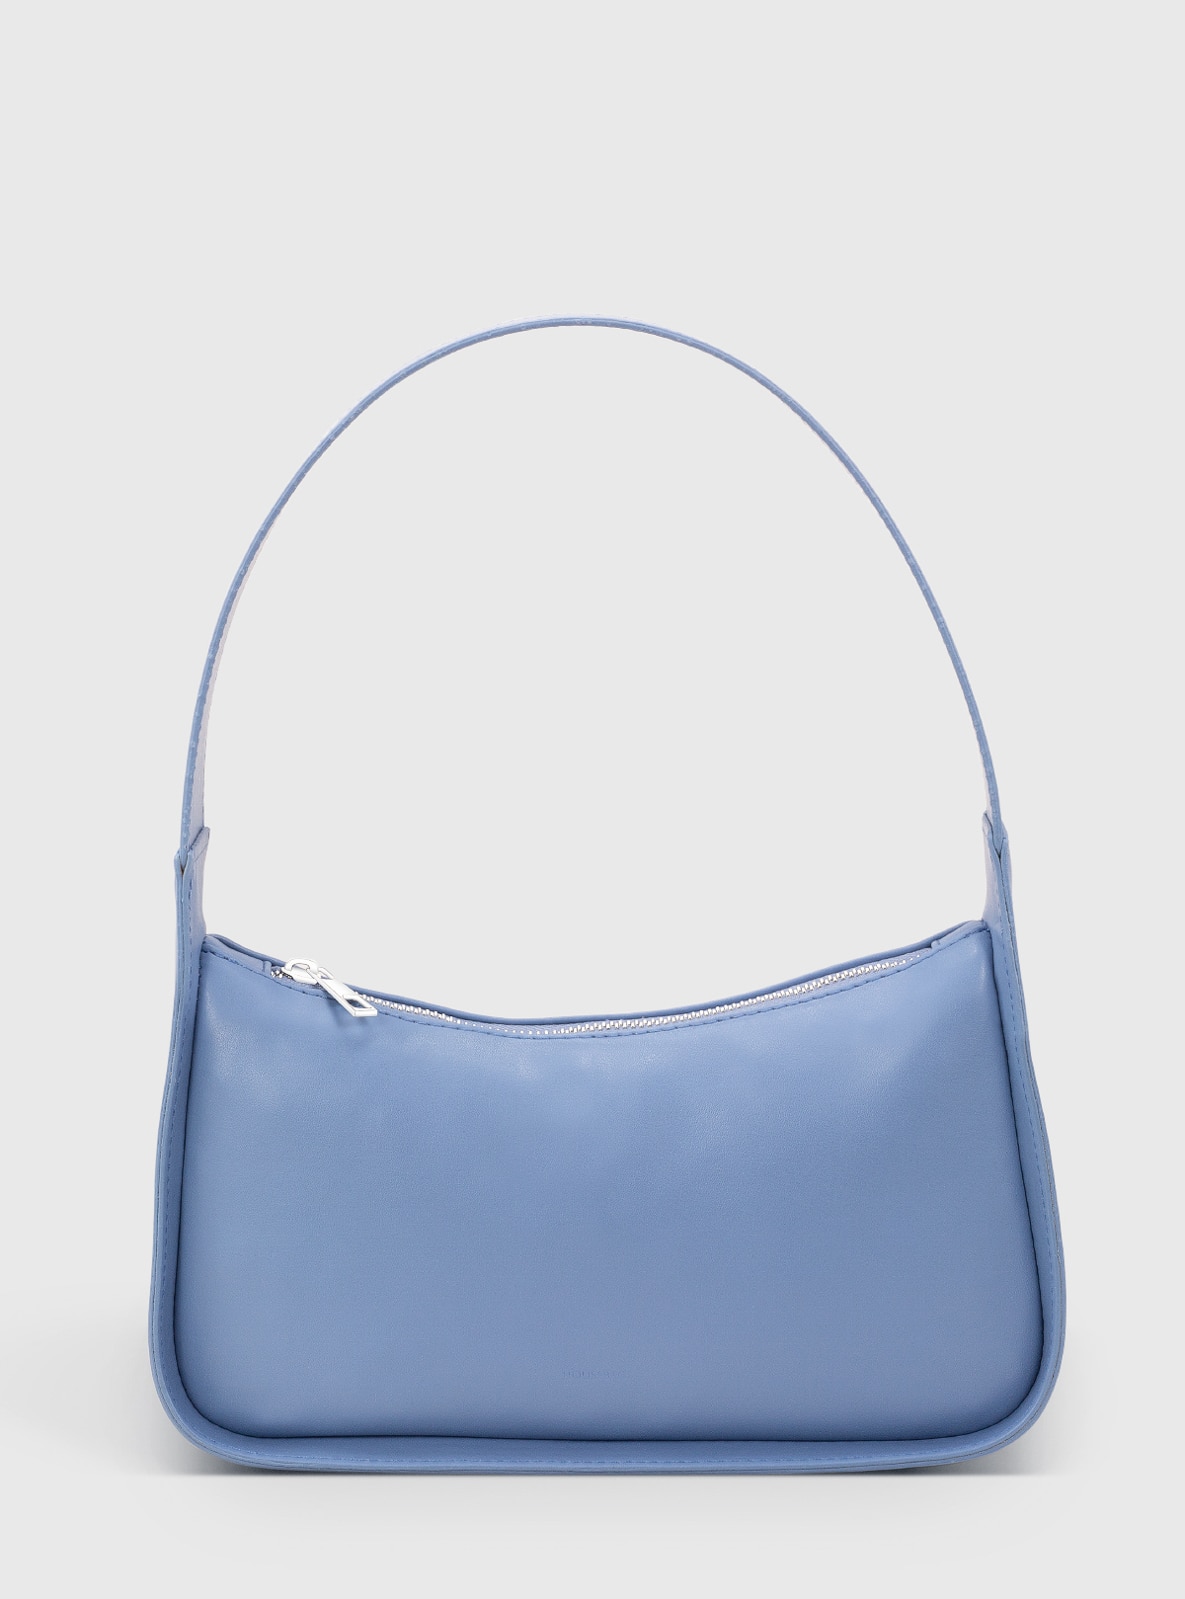 Blue - Baguette Bags - Faux Leather - Baby Blue